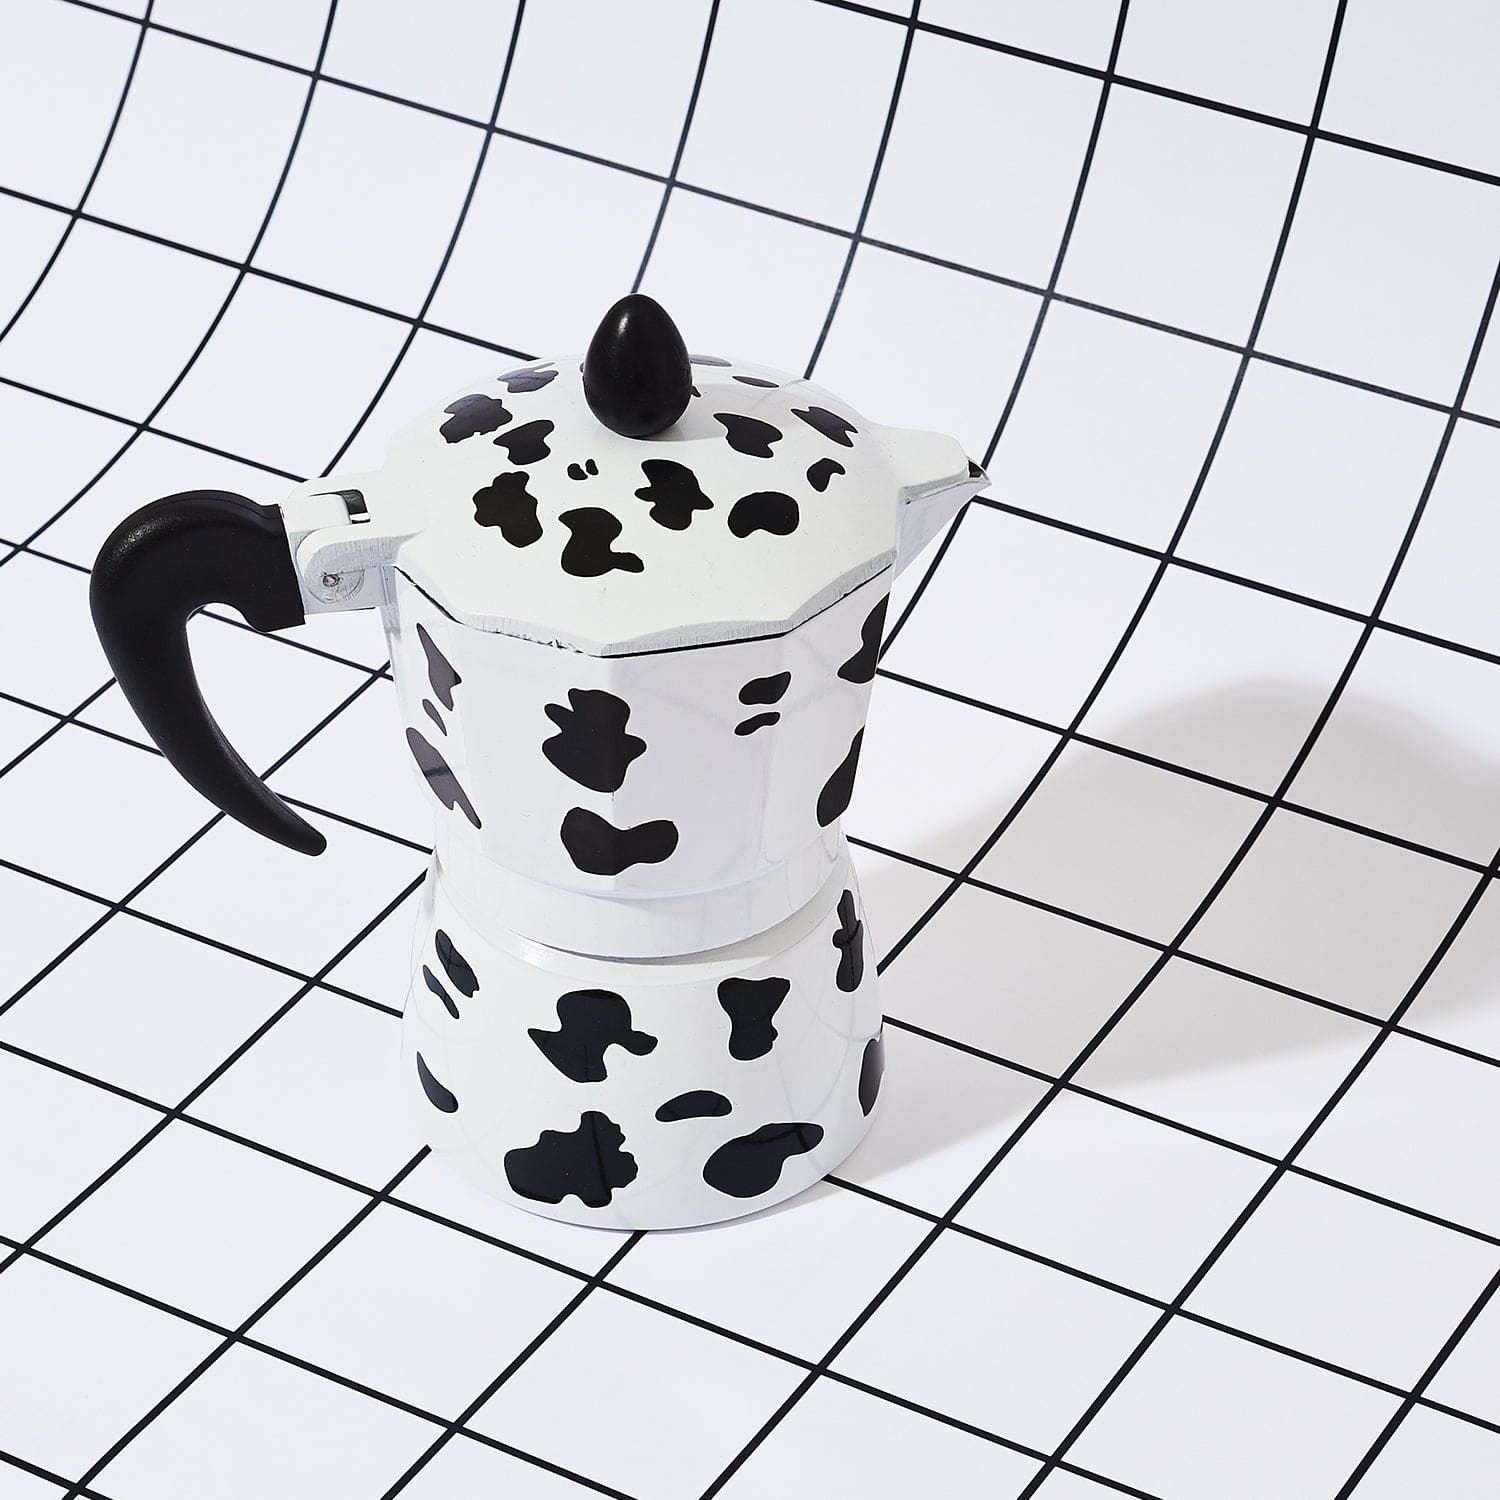 Mooka Cow Print Stovetop Espresso Pot